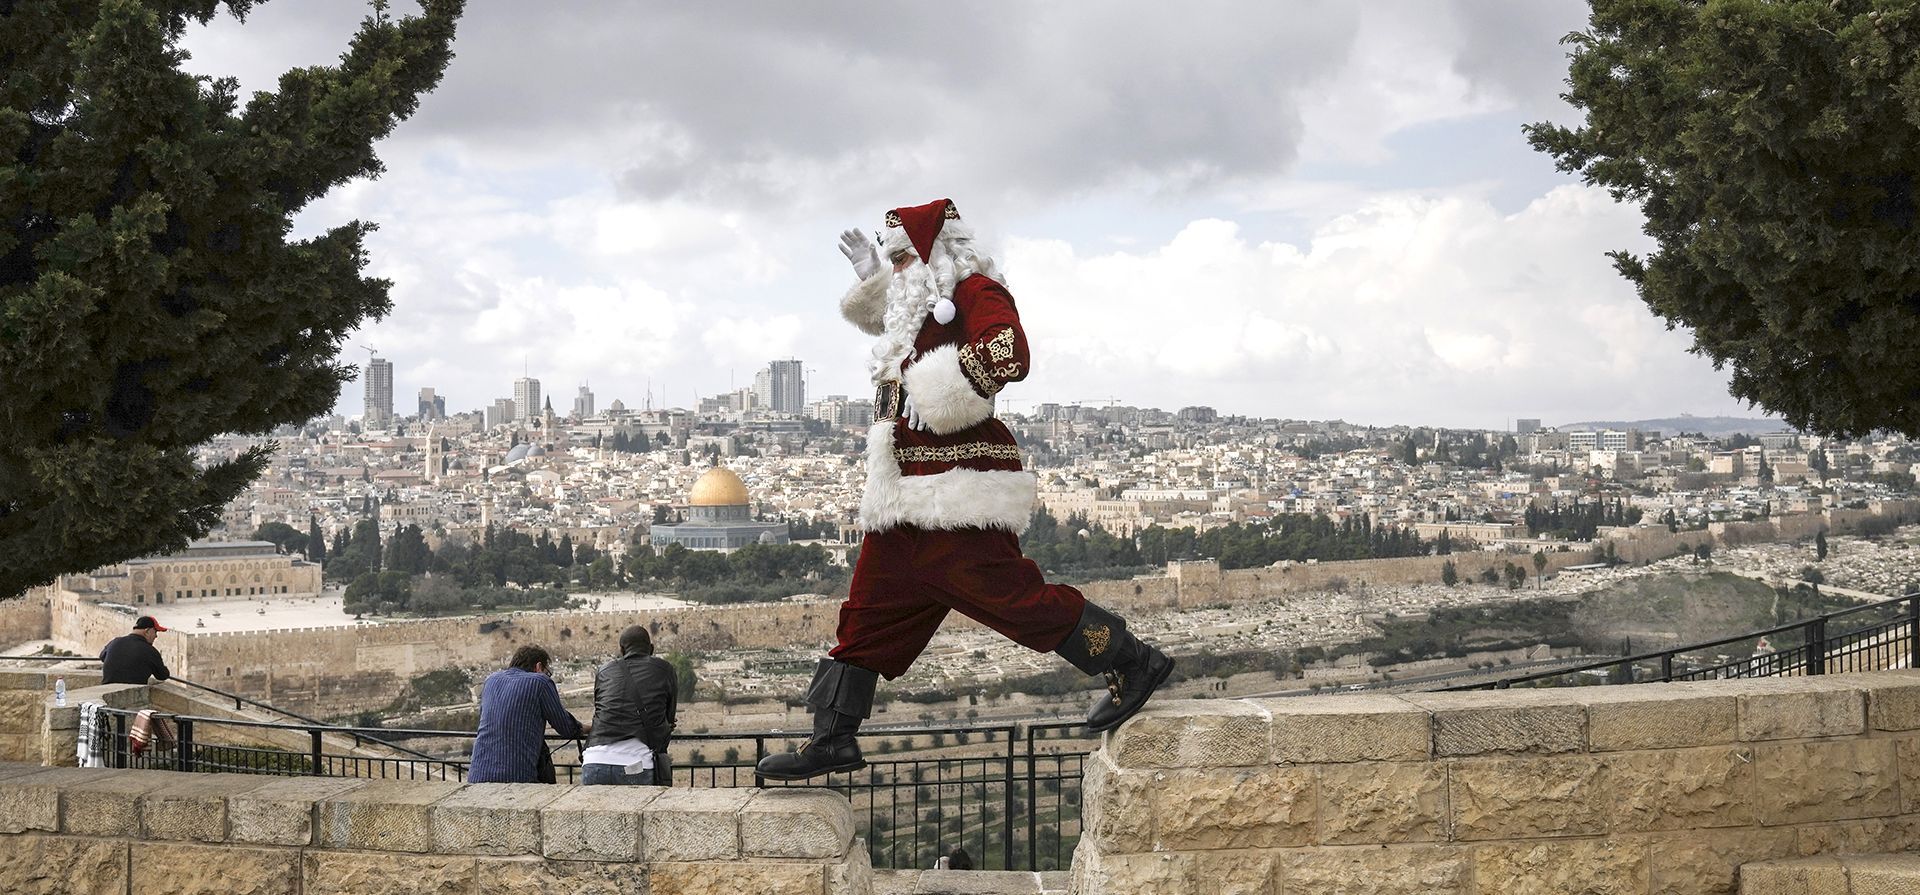 Un hombre vestido como Papá Noel, posa para fotos en el Monte de los Olivos con vista a la Ciudad Vieja de Jerusalén, antes de las próximas vacaciones de Navidad, el martes 6 de diciembre de 2022. Foto: AP/Mahmoud Illean